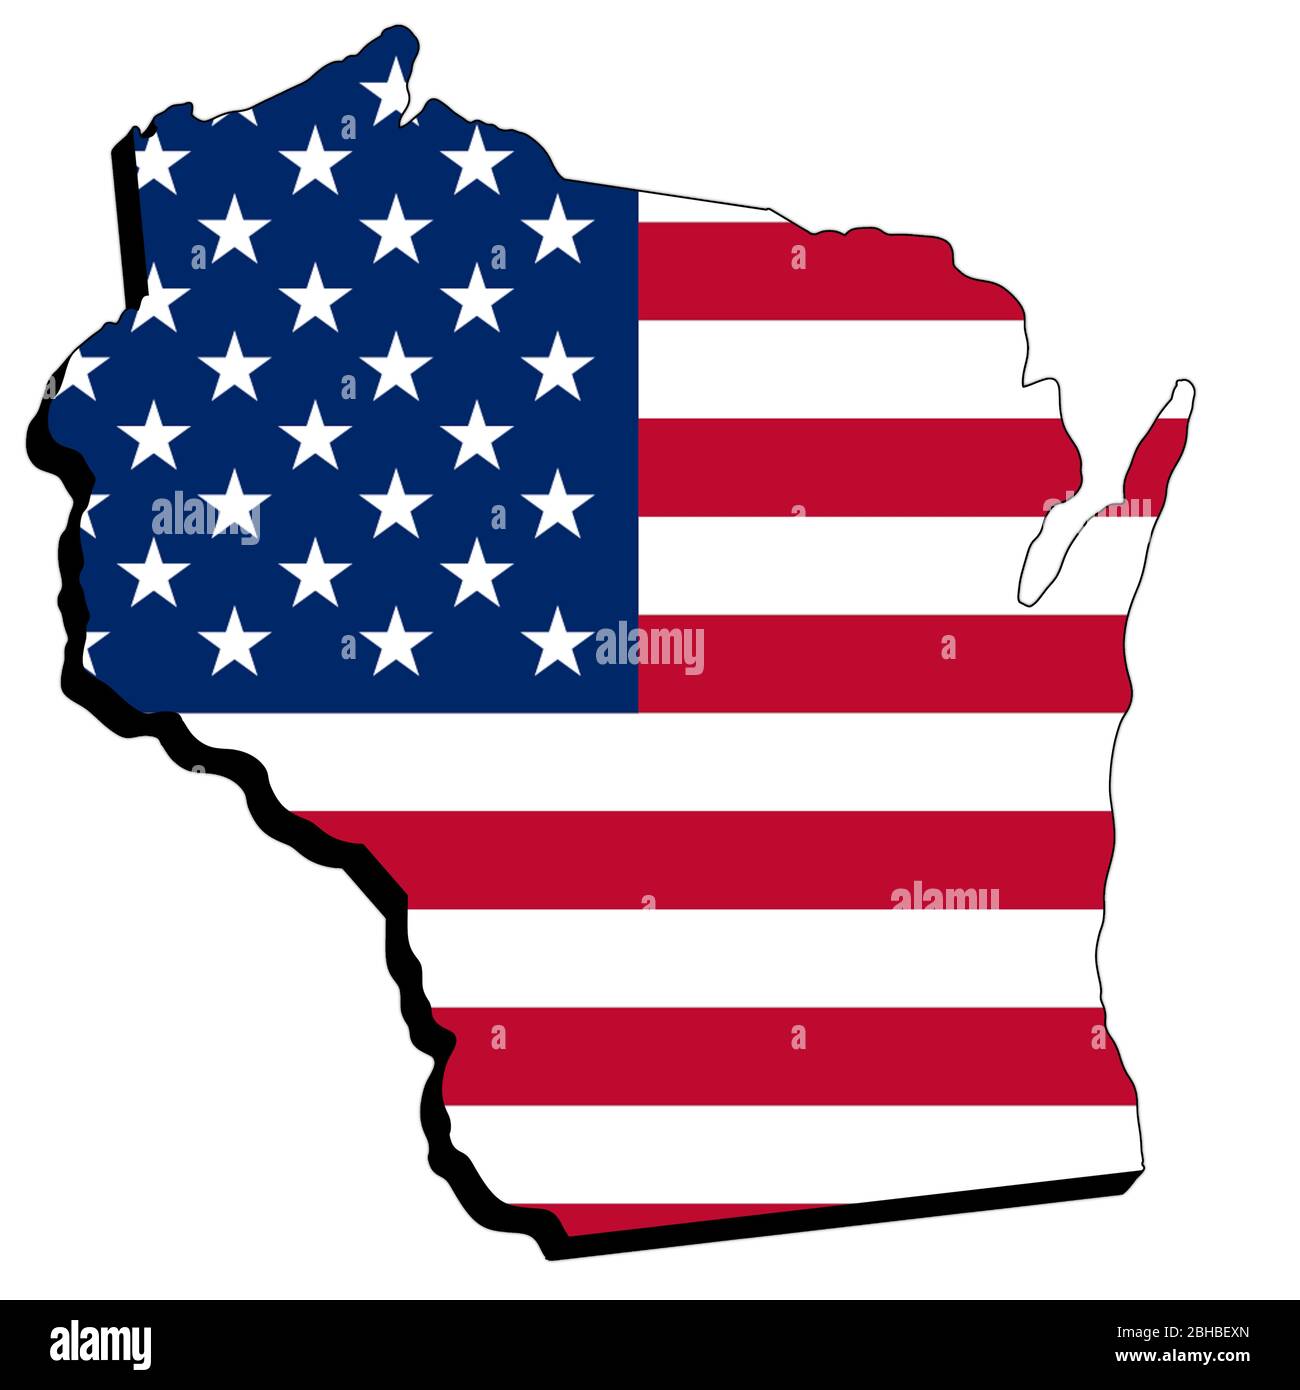 Mappa 3d del Wisconsin con illustrazione della bandiera americana isolata su sfondo bianco Foto Stock